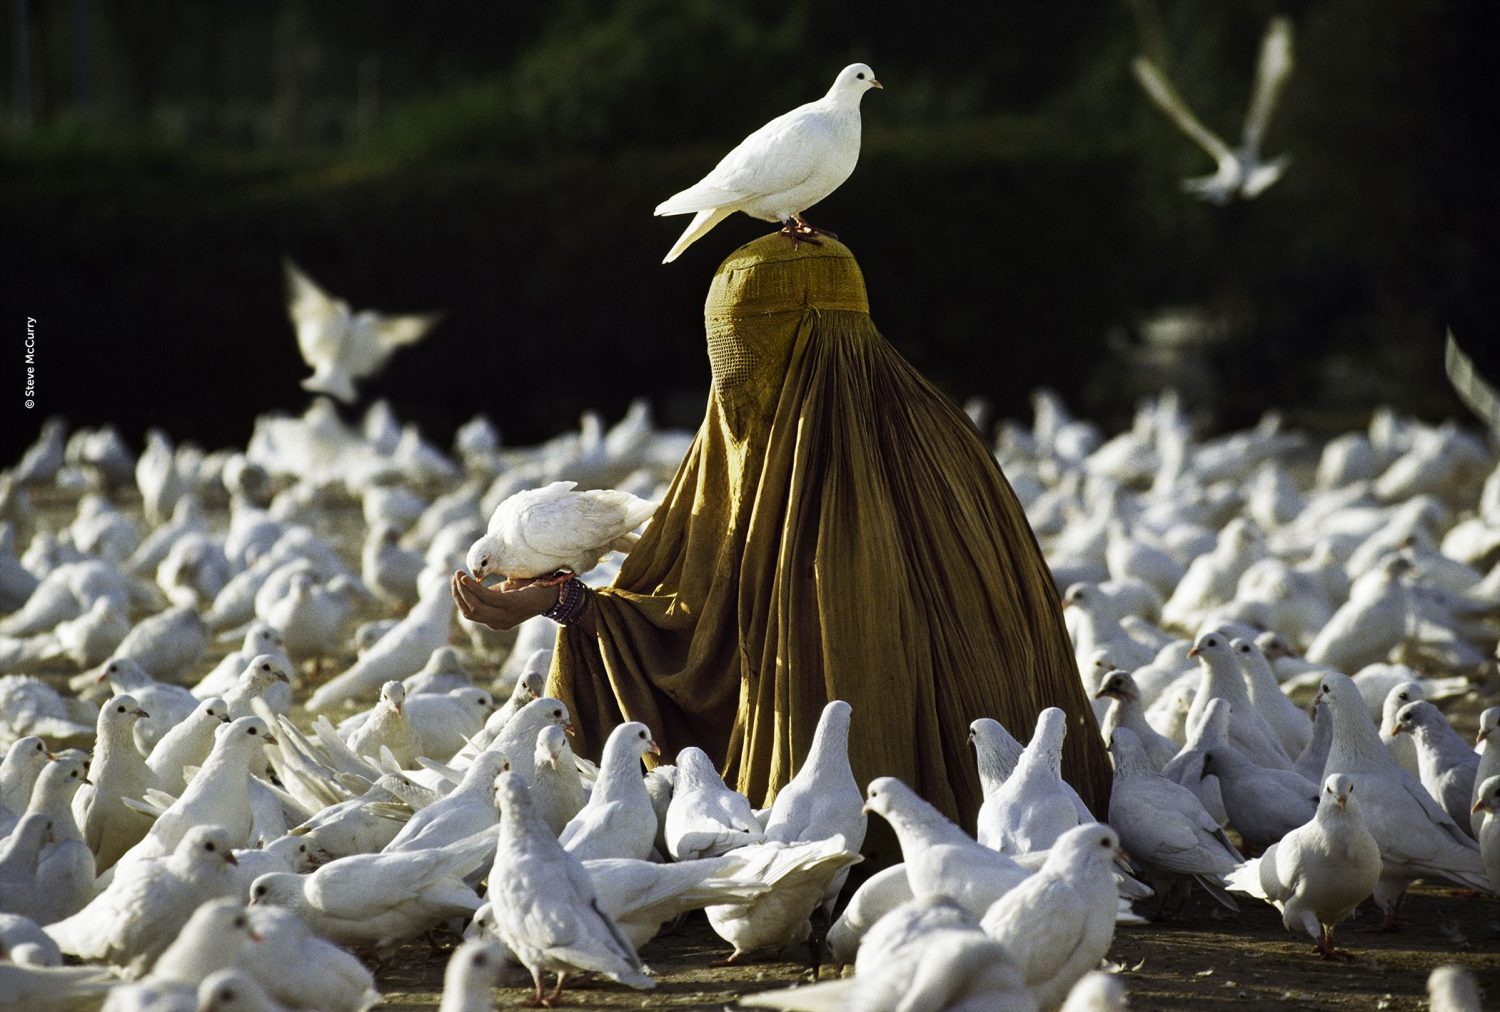 For Freedom, a Palermo le foto di Steve McCurry per le donne afgane